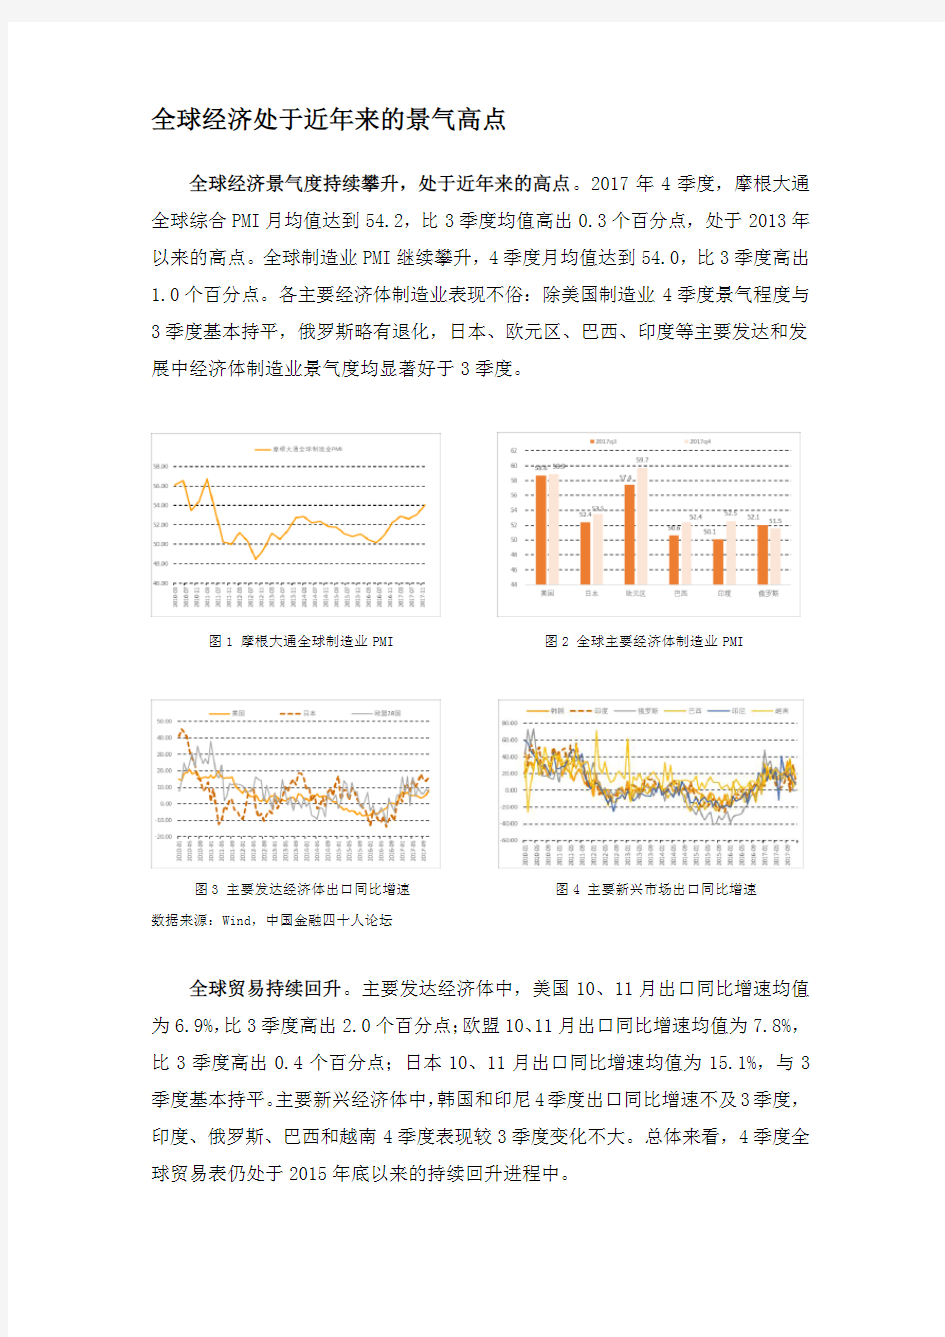 2018年中国宏观经济展望-中国金融四十人论坛